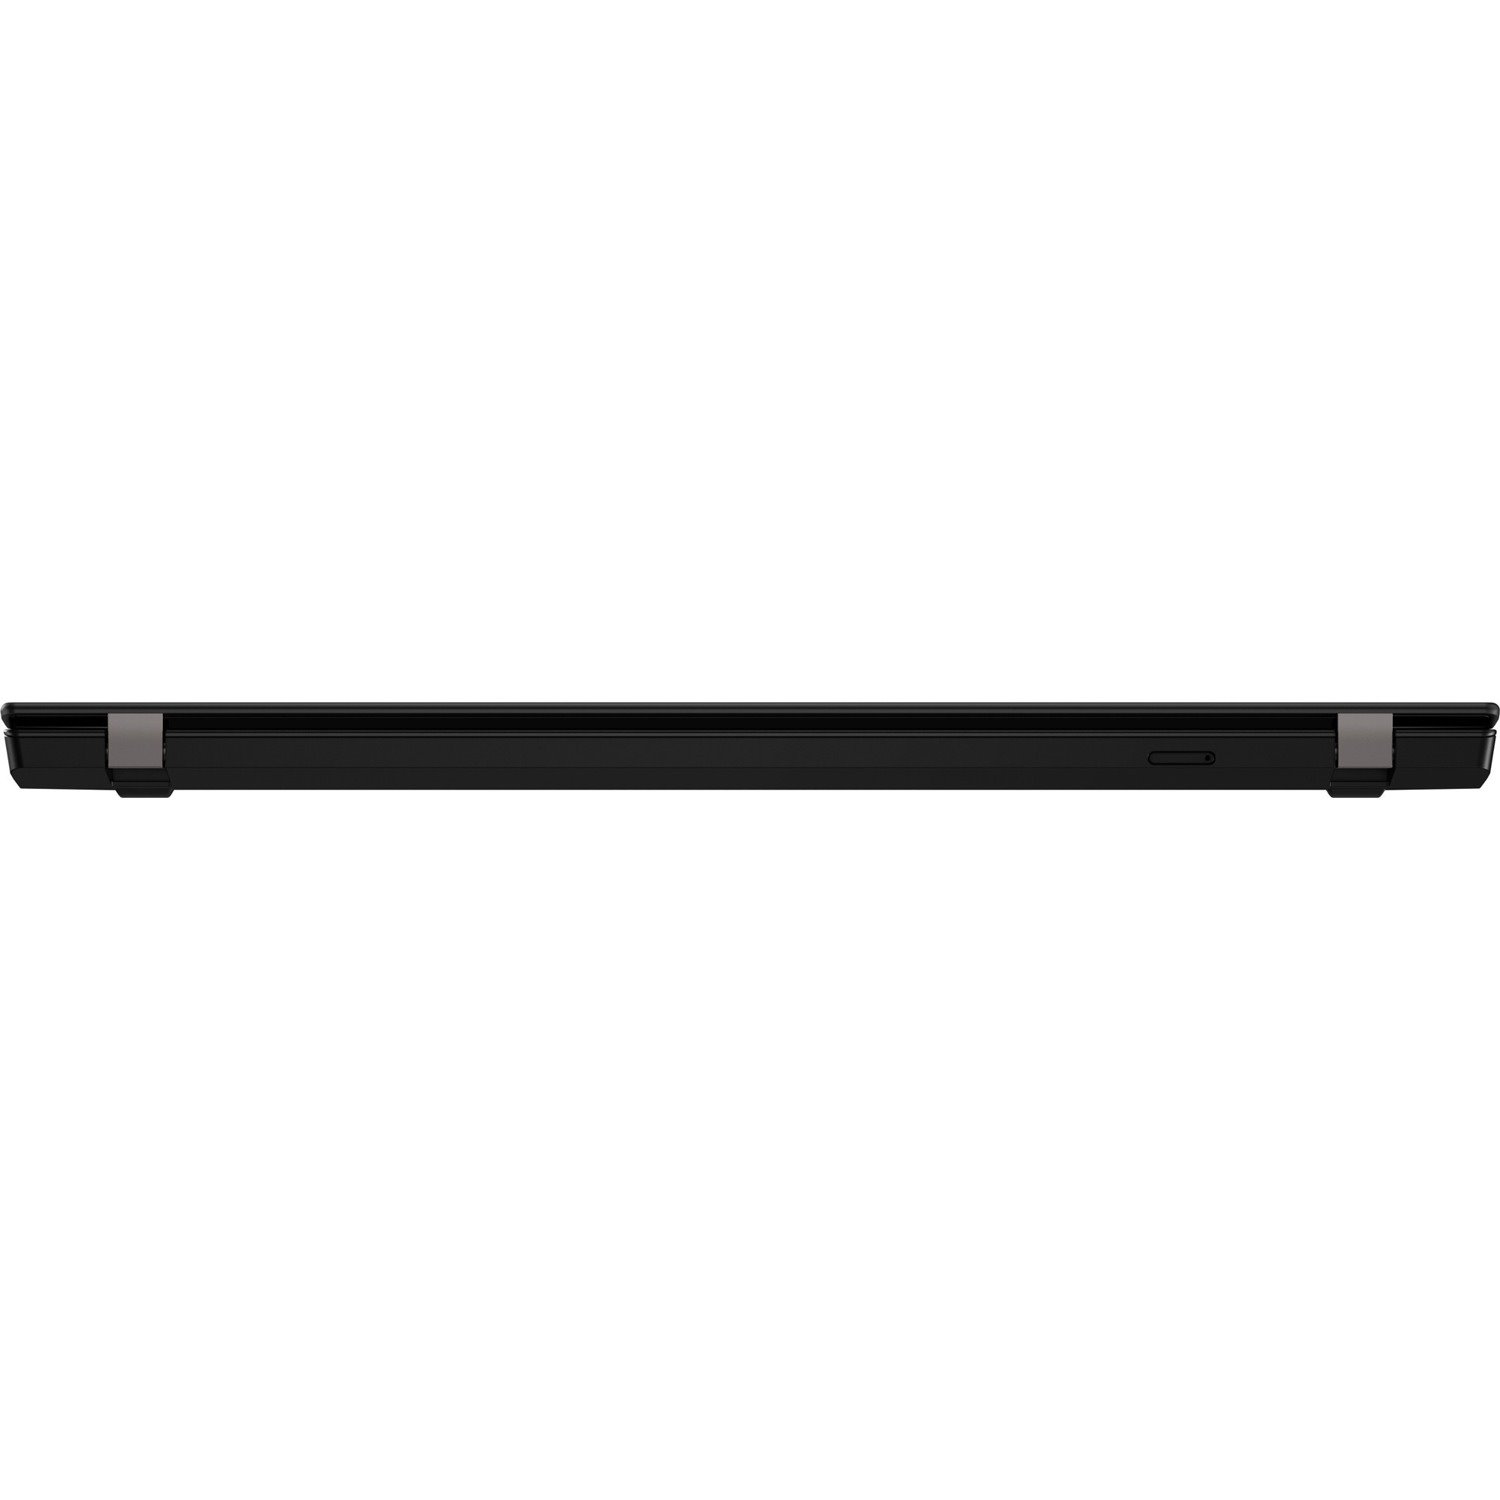 Lenovo ThinkPad T14 Gen 1 20S00034CA 14" Notebook - Full HD - 1920 x 1080 - Intel Core i7 10th Gen i7-10510U Quad-core (4 Core) 1.80 GHz - 8 GB Total RAM - 512 GB SSD - Black